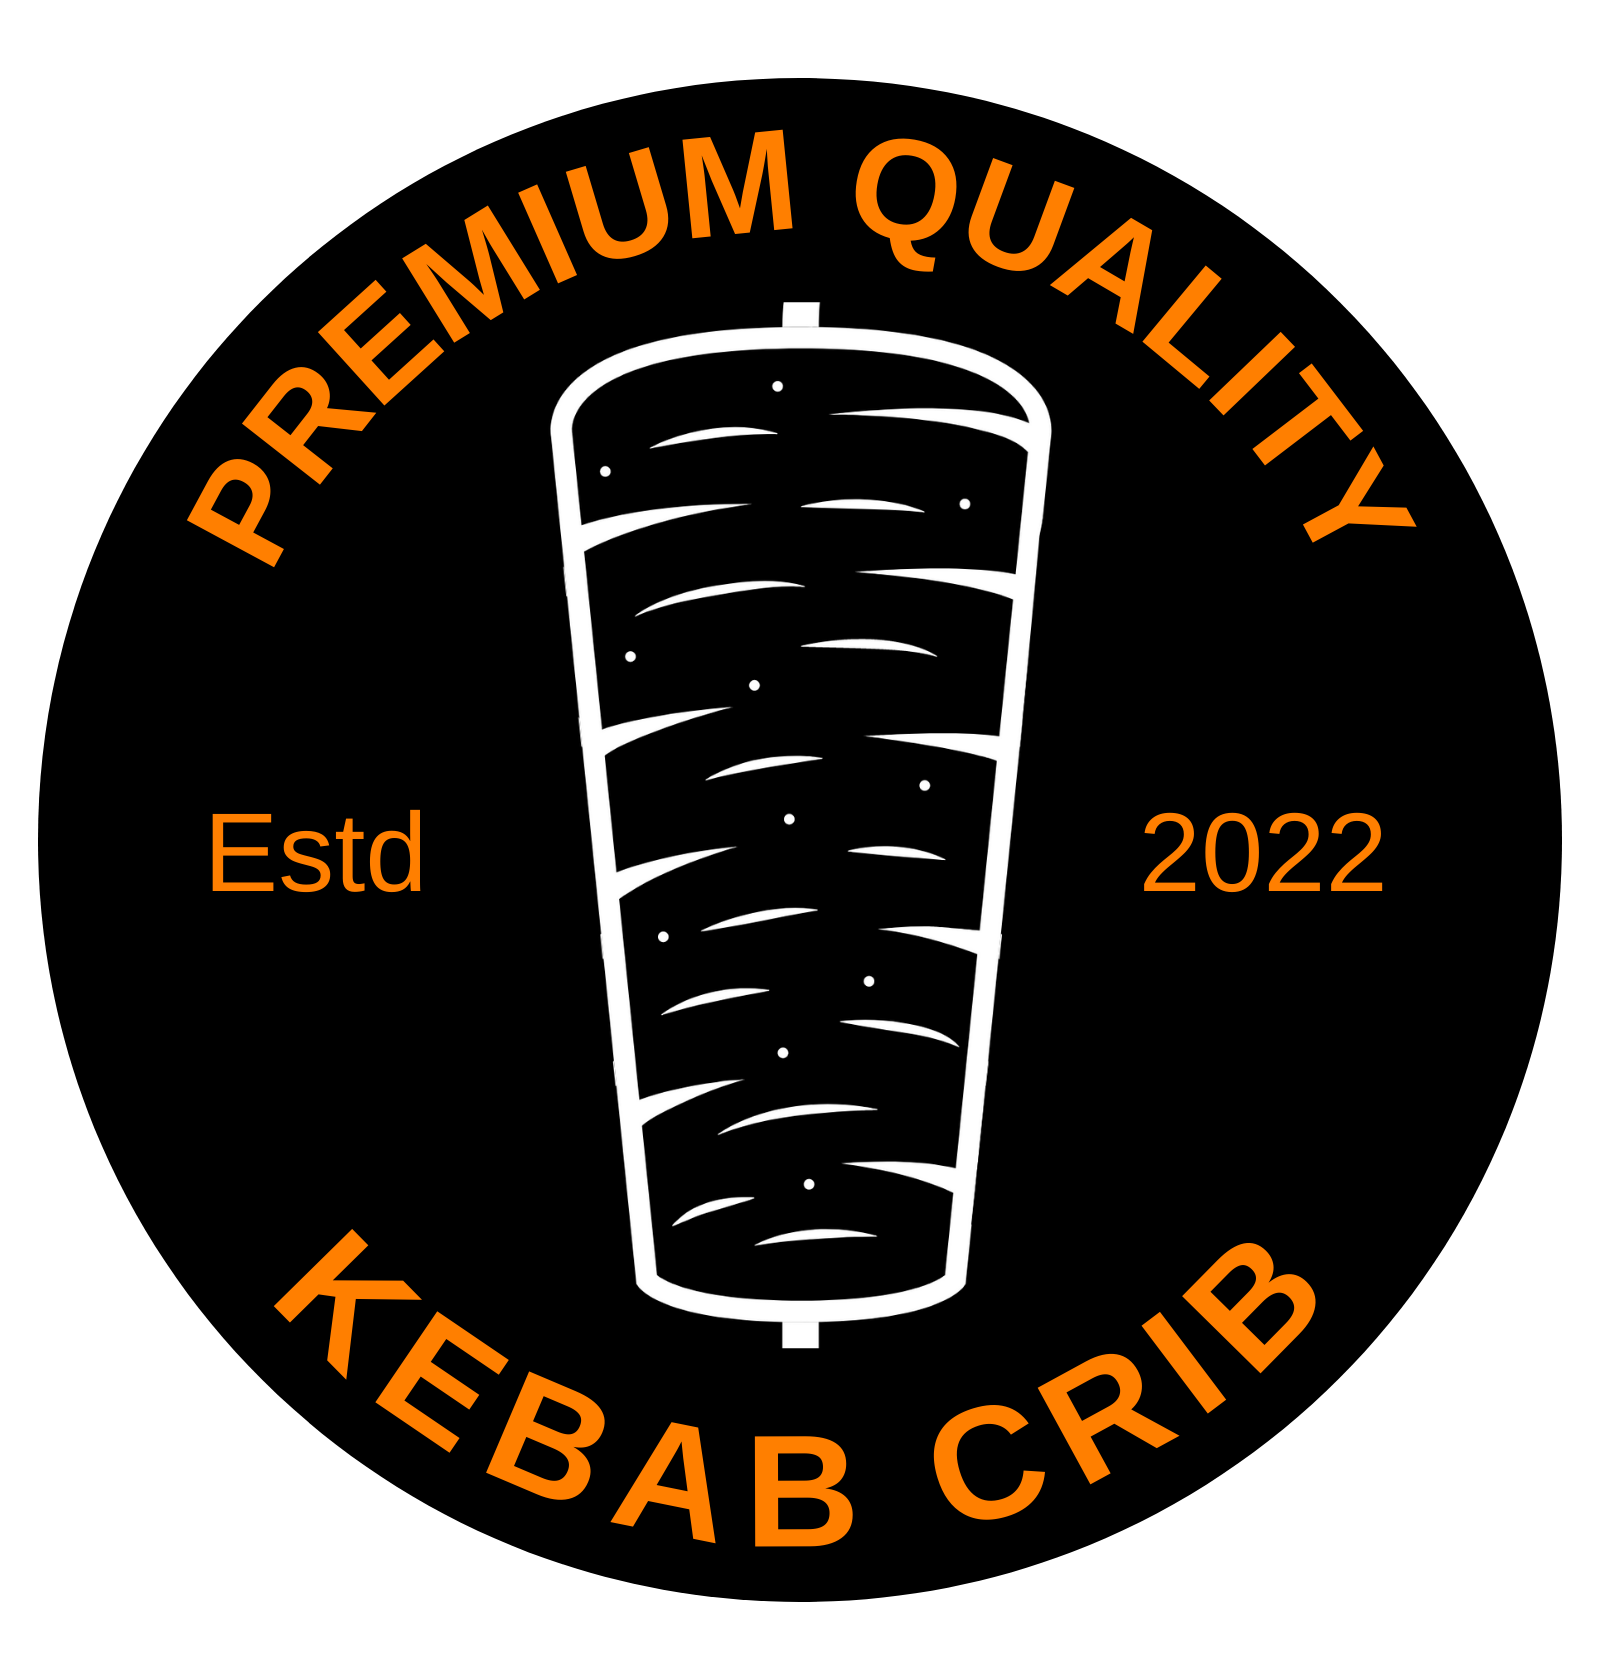 Kebab Crib